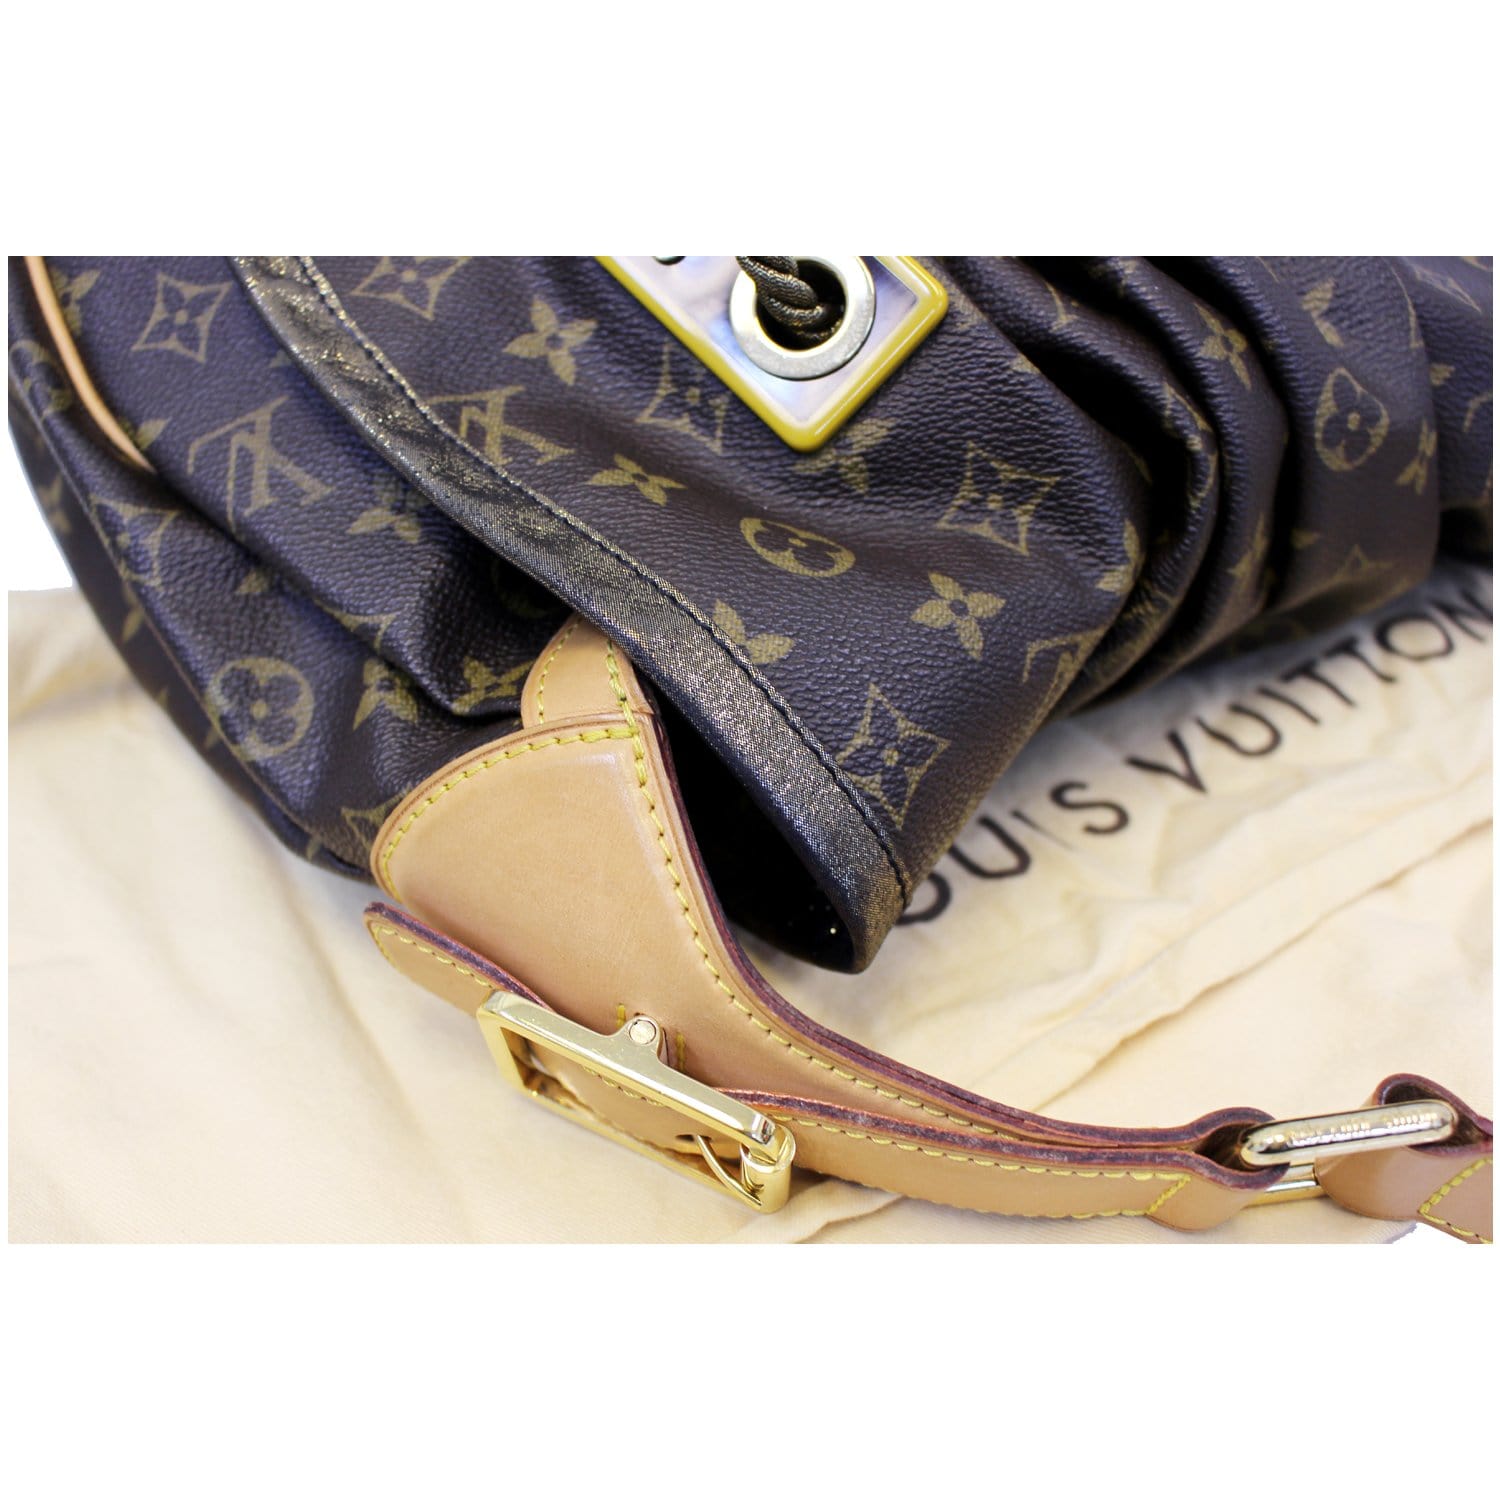 Louis Vuitton Limited Edition 'Kalahari GM' Bag